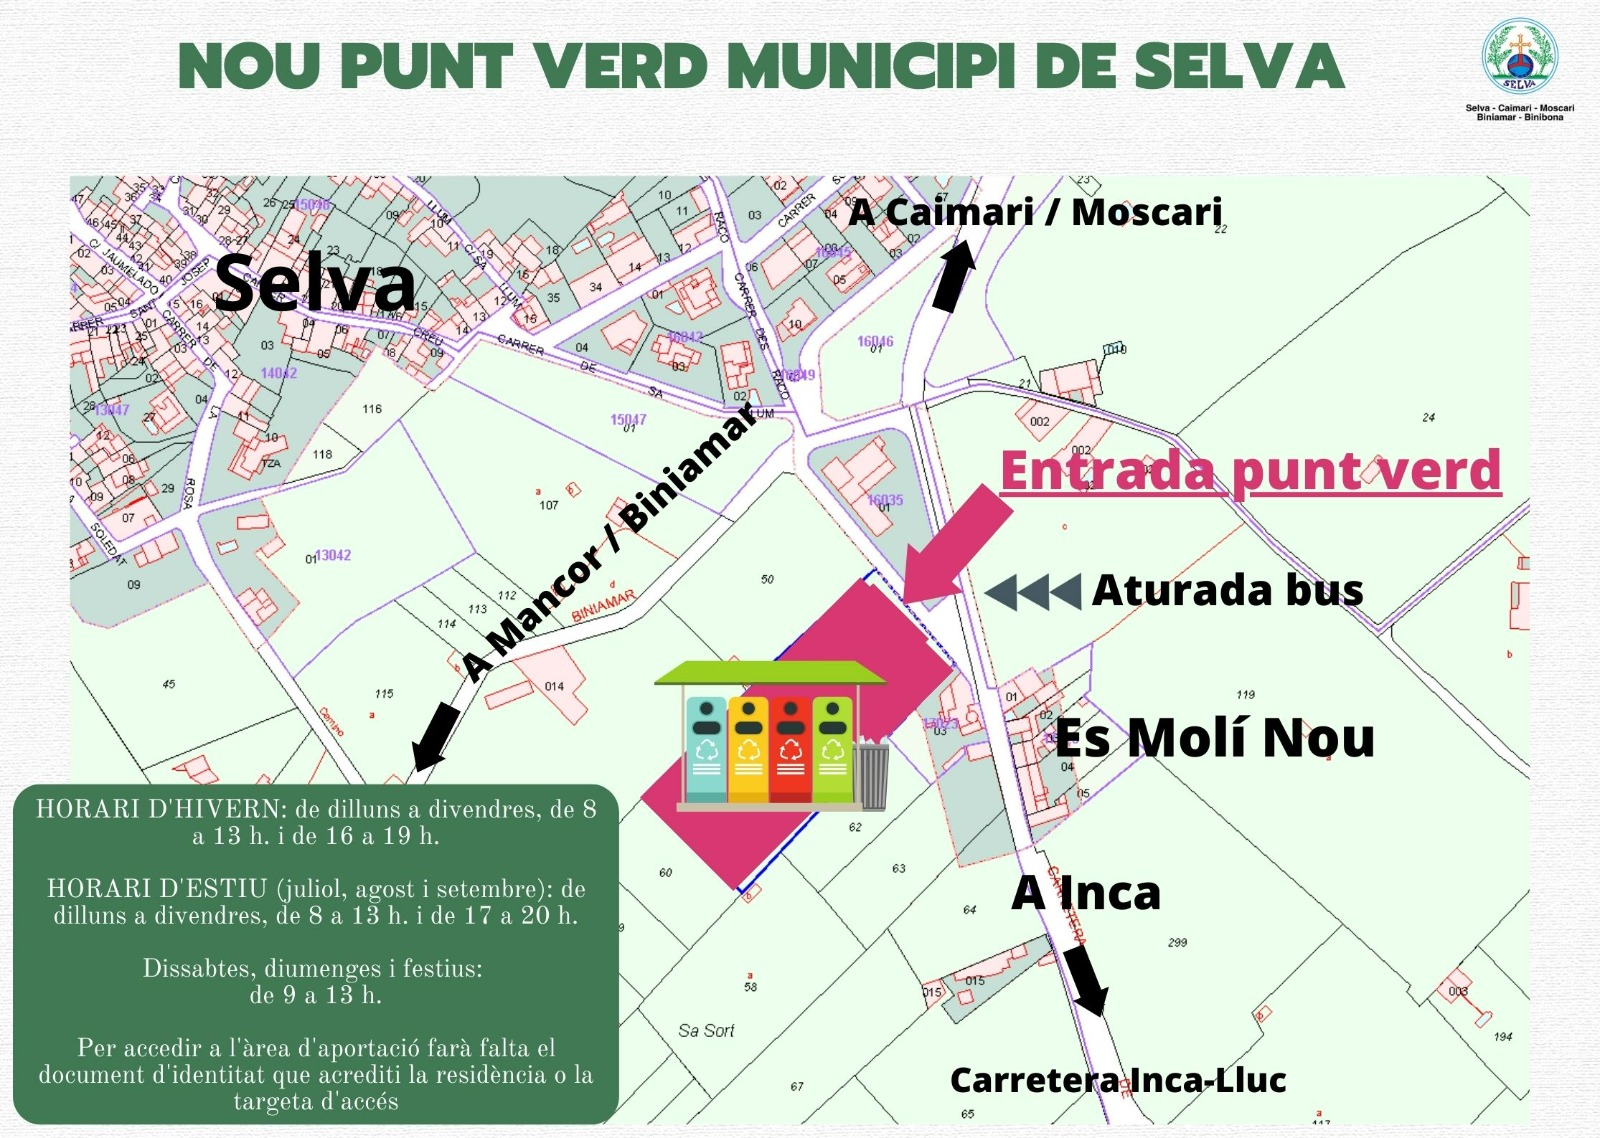 Nou punt verd municipi de Selva